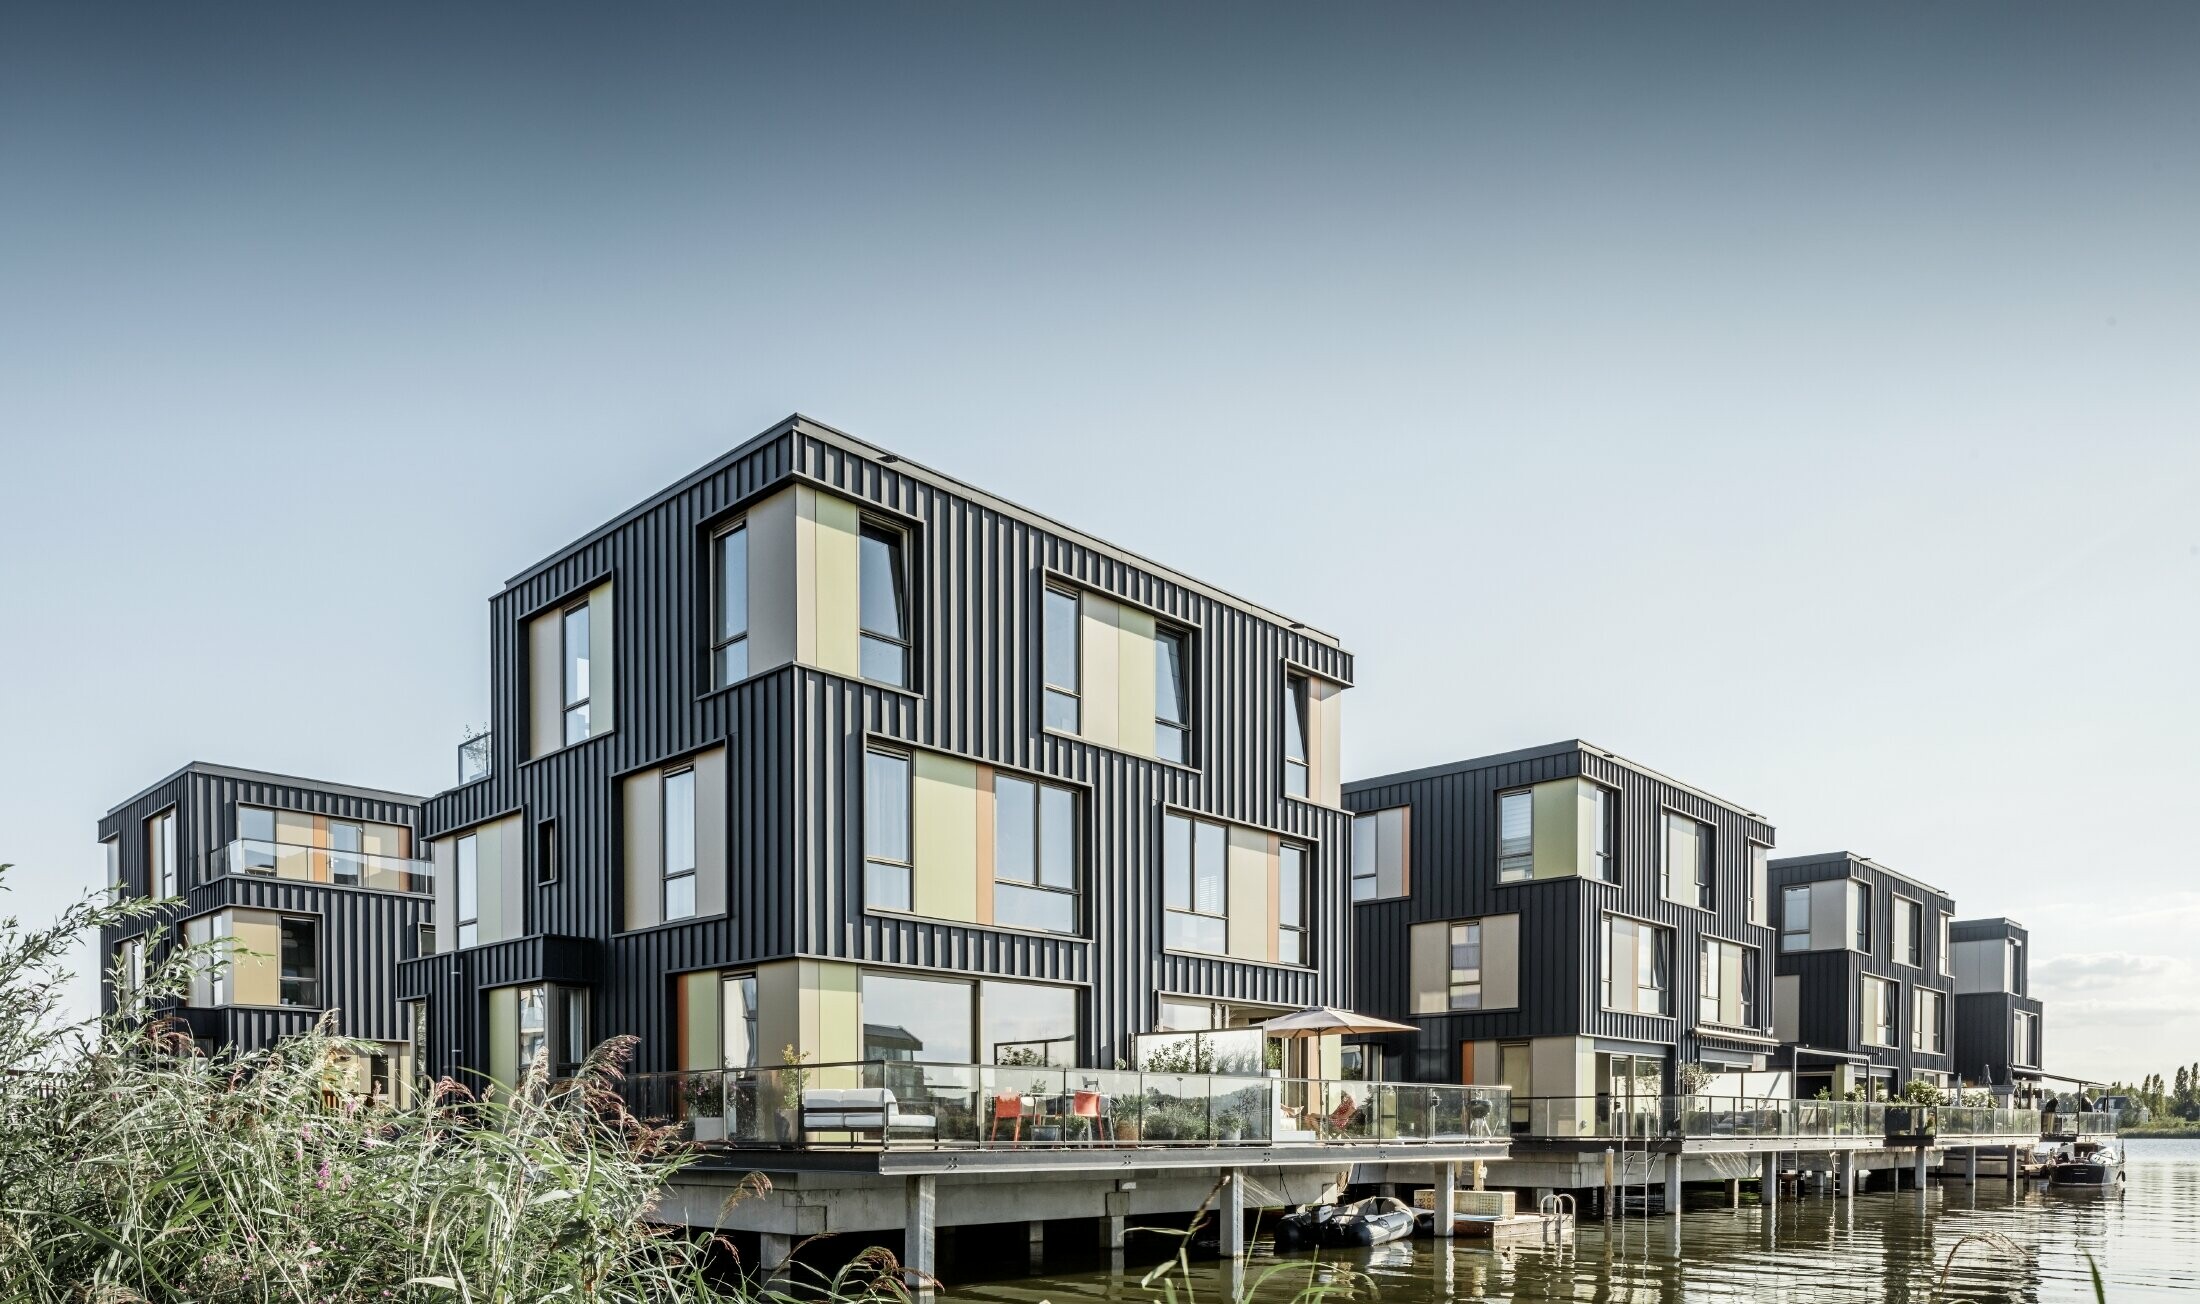 Nuova area abitativa con case bifamiliari sul lago ad Amsterdam. Le abitazioni sono state realizzate con Prefalz di PREFA in P.10 antracite.